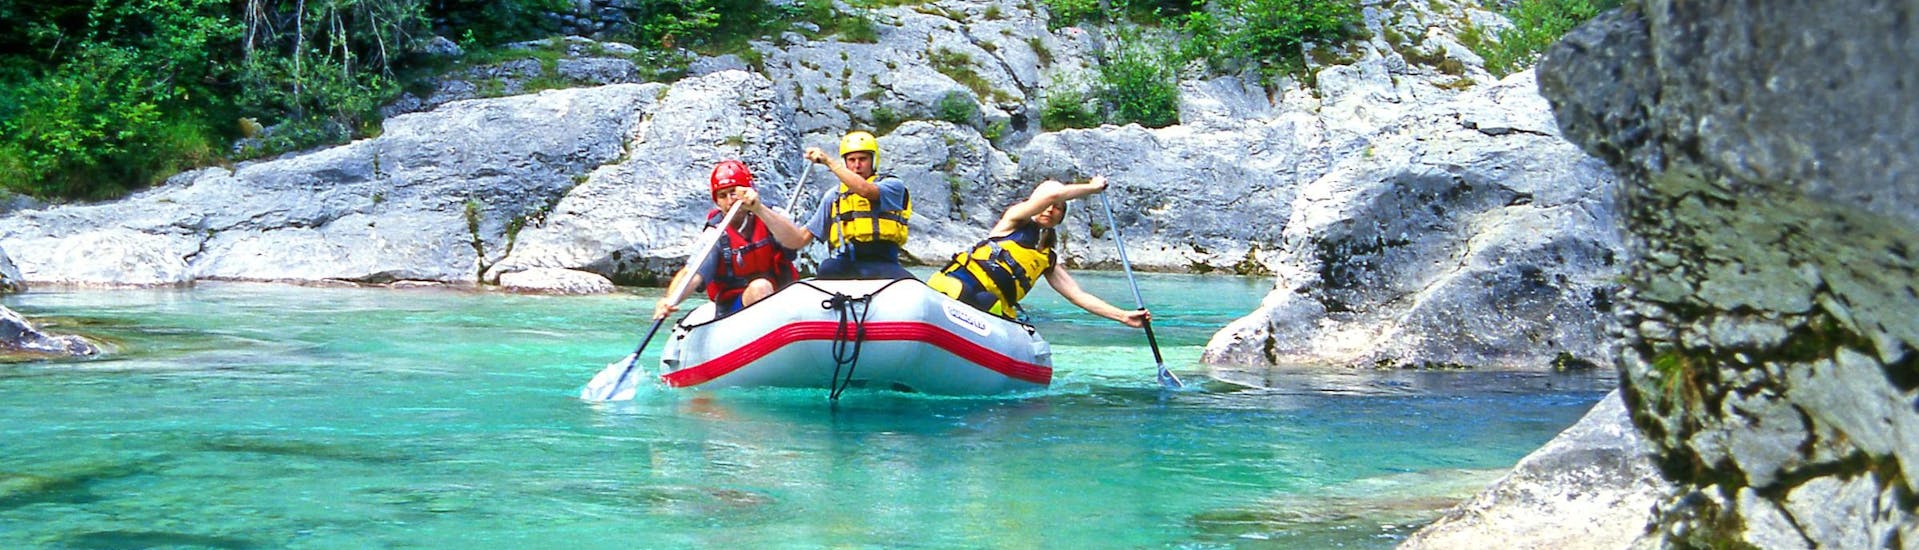 Emozioni forti vissute da un gruppo di giovani nel punto di interesse Fratarca, ideale per fare rafting e canyoning.